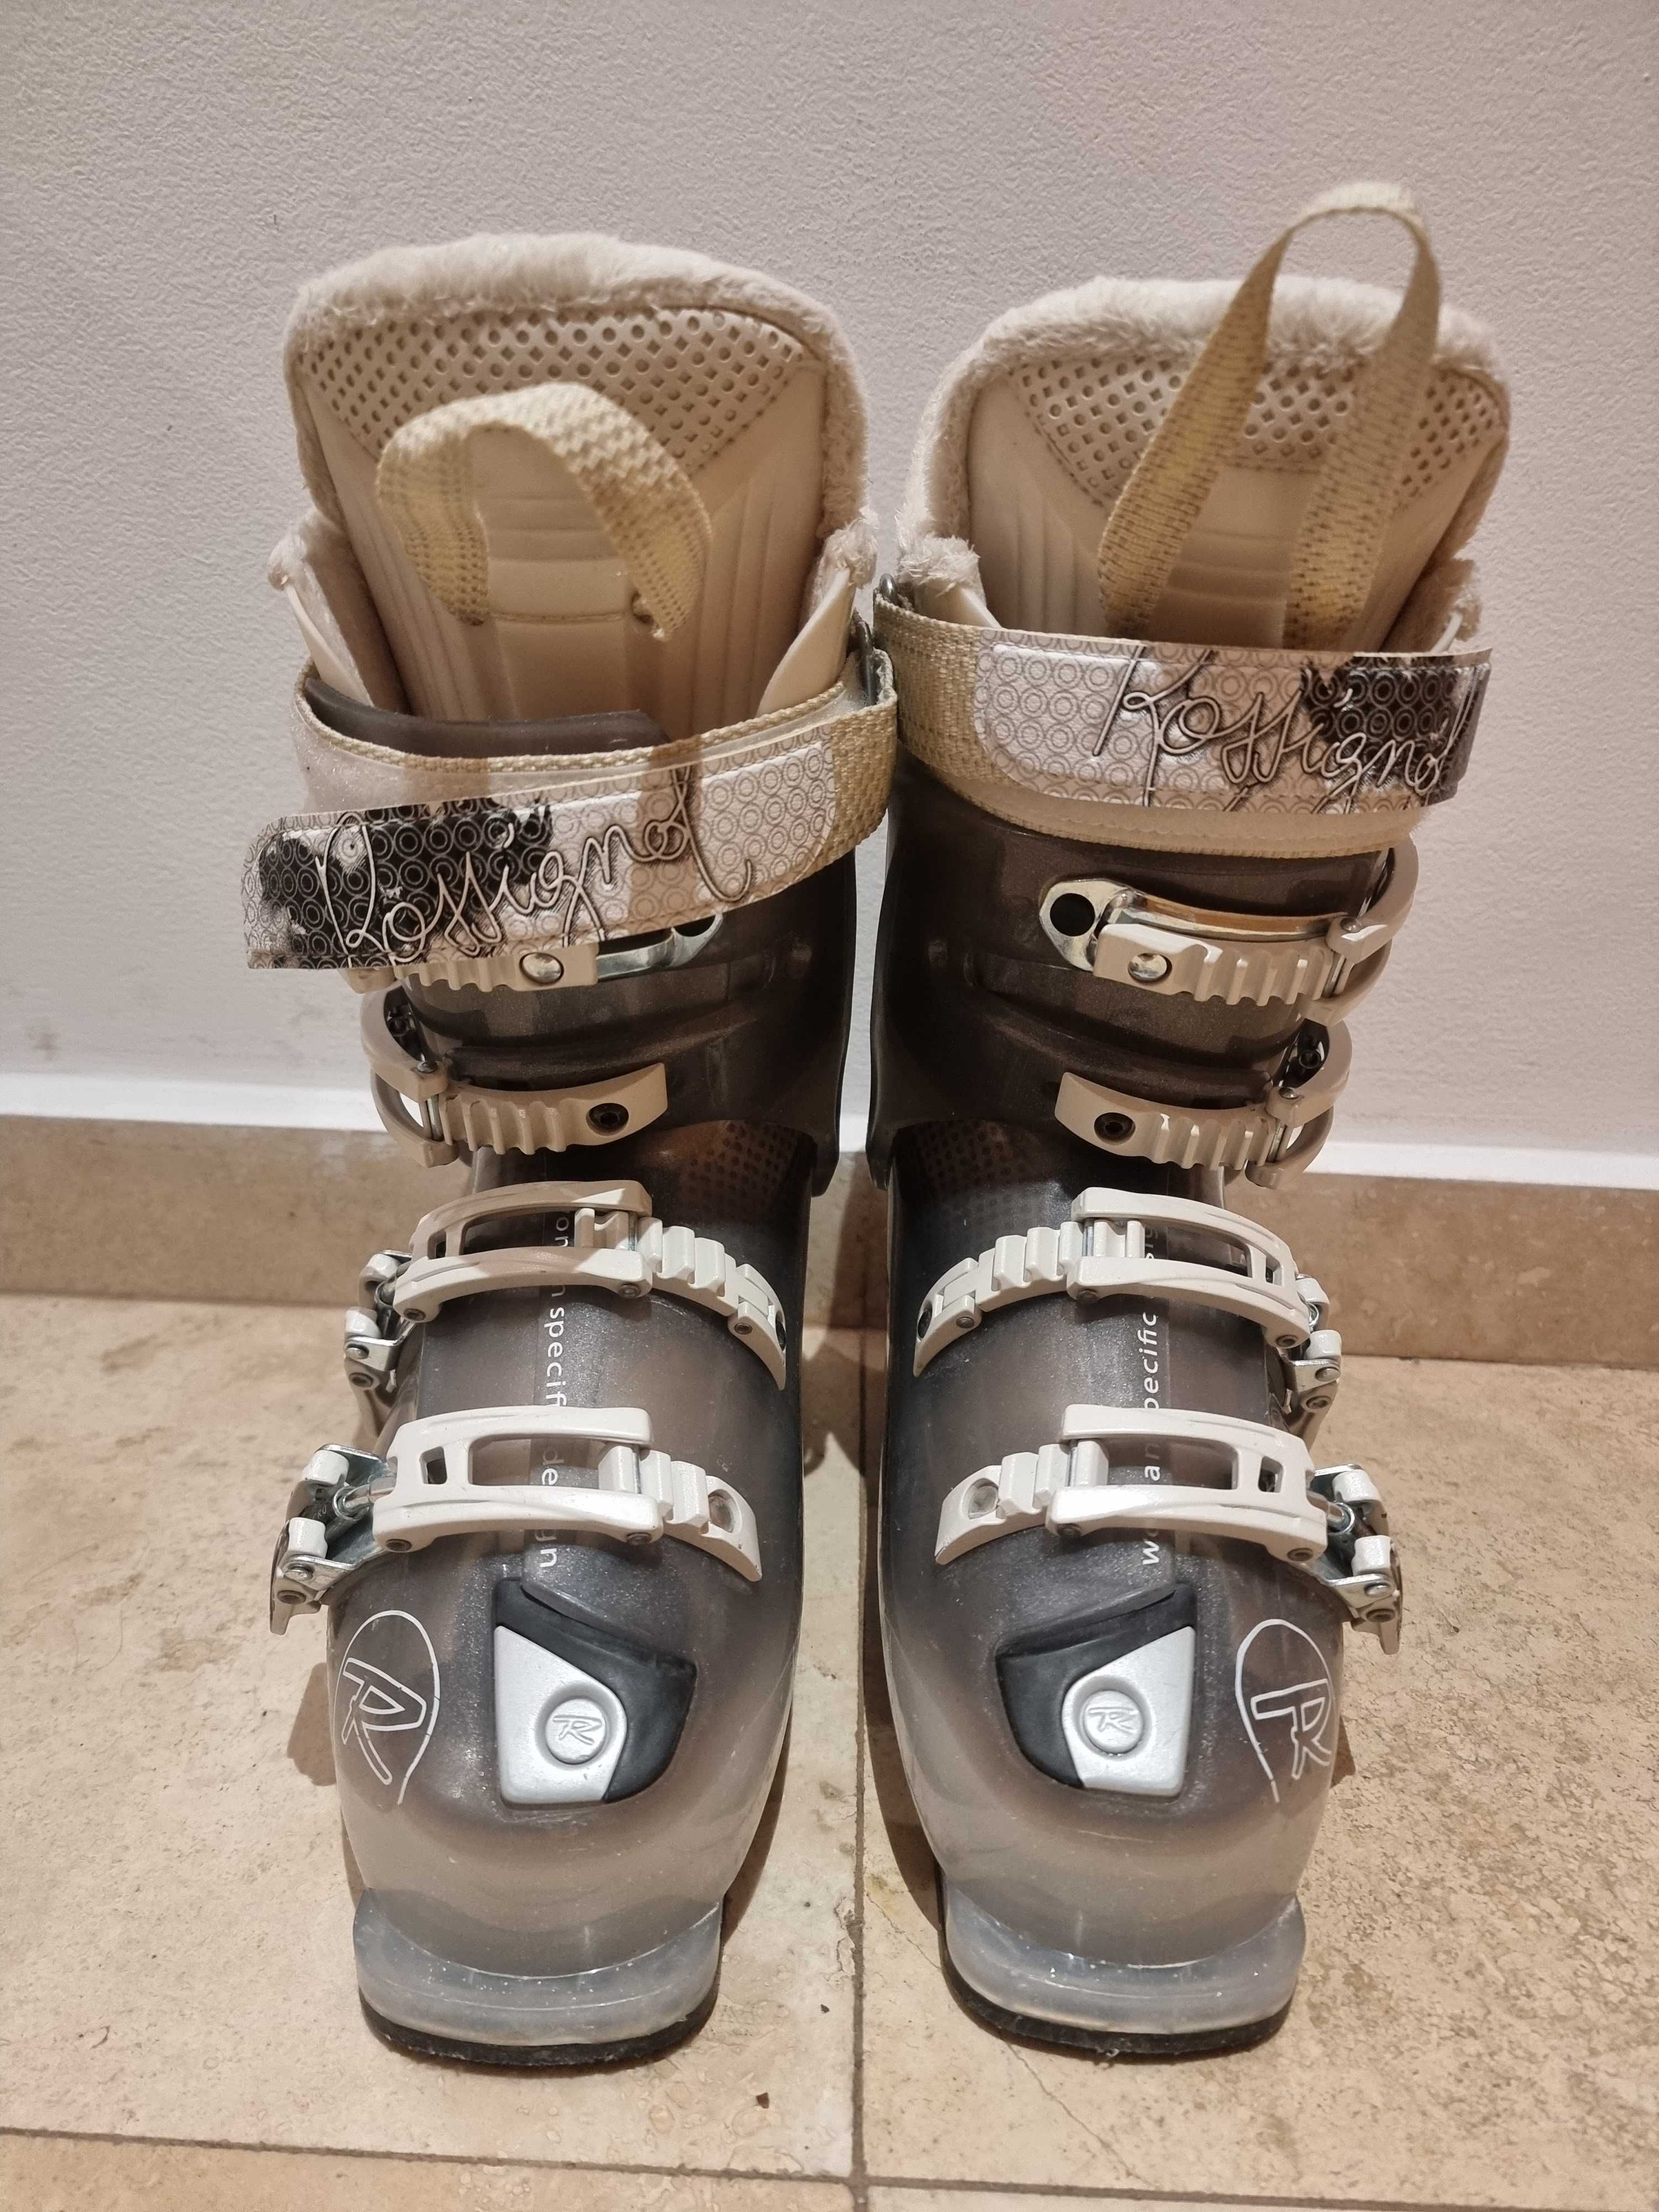 Дамски ски обувки Rossignol Vita 7 sensor 2, снелка 23-23.5